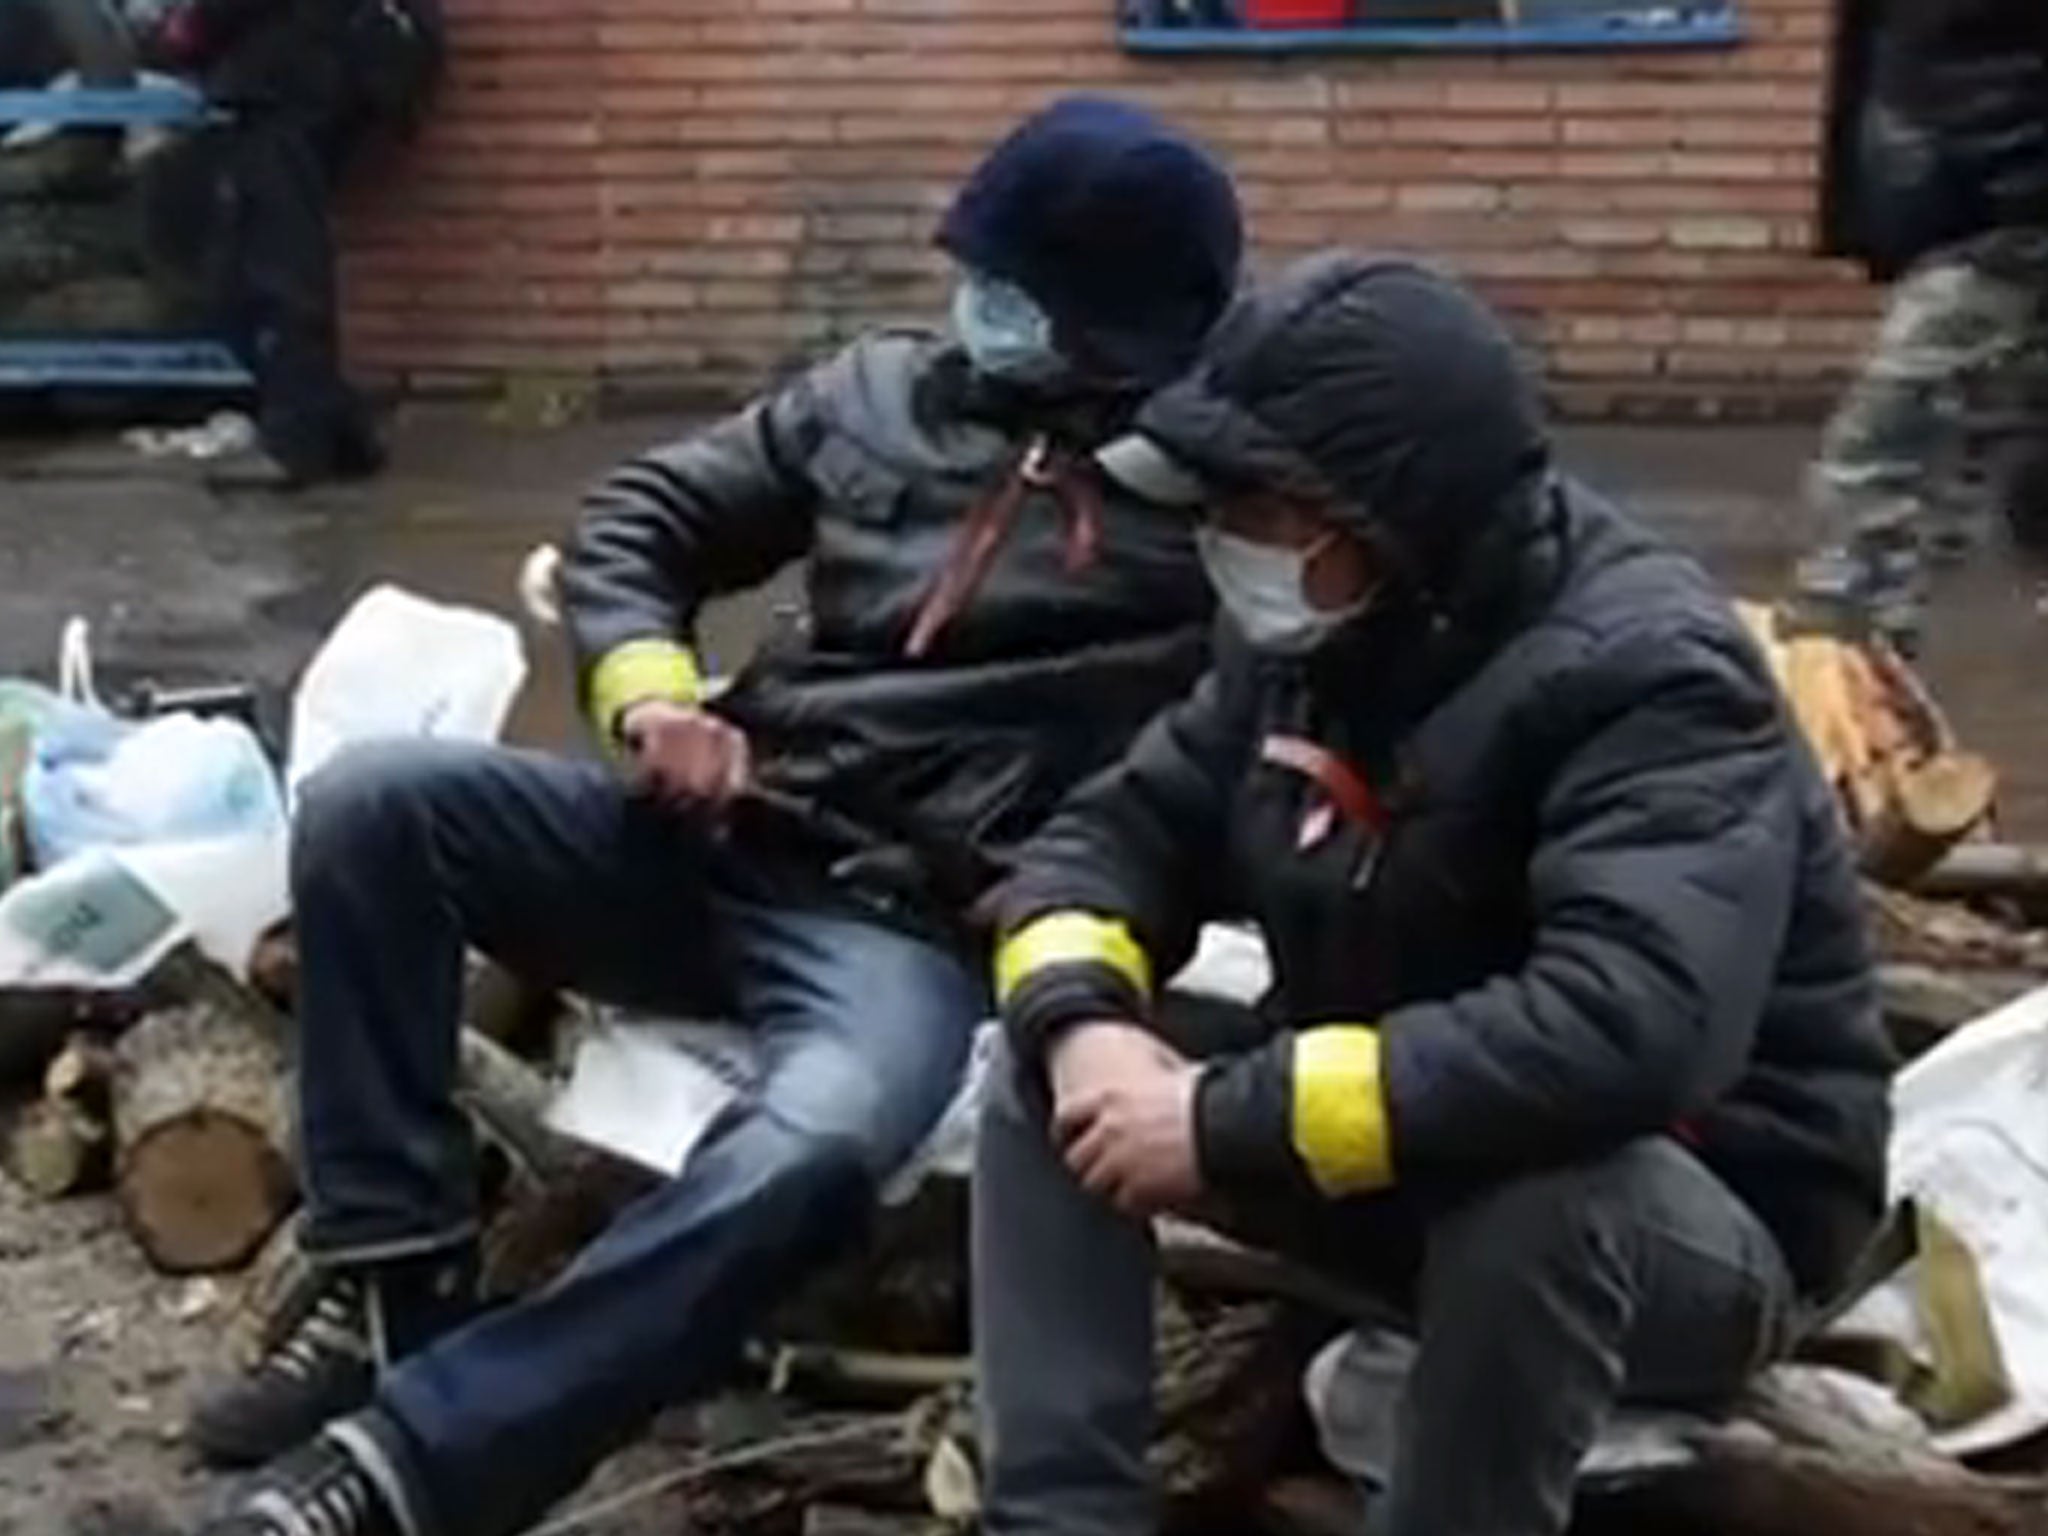 Pro-Russian separatists in Ukraine